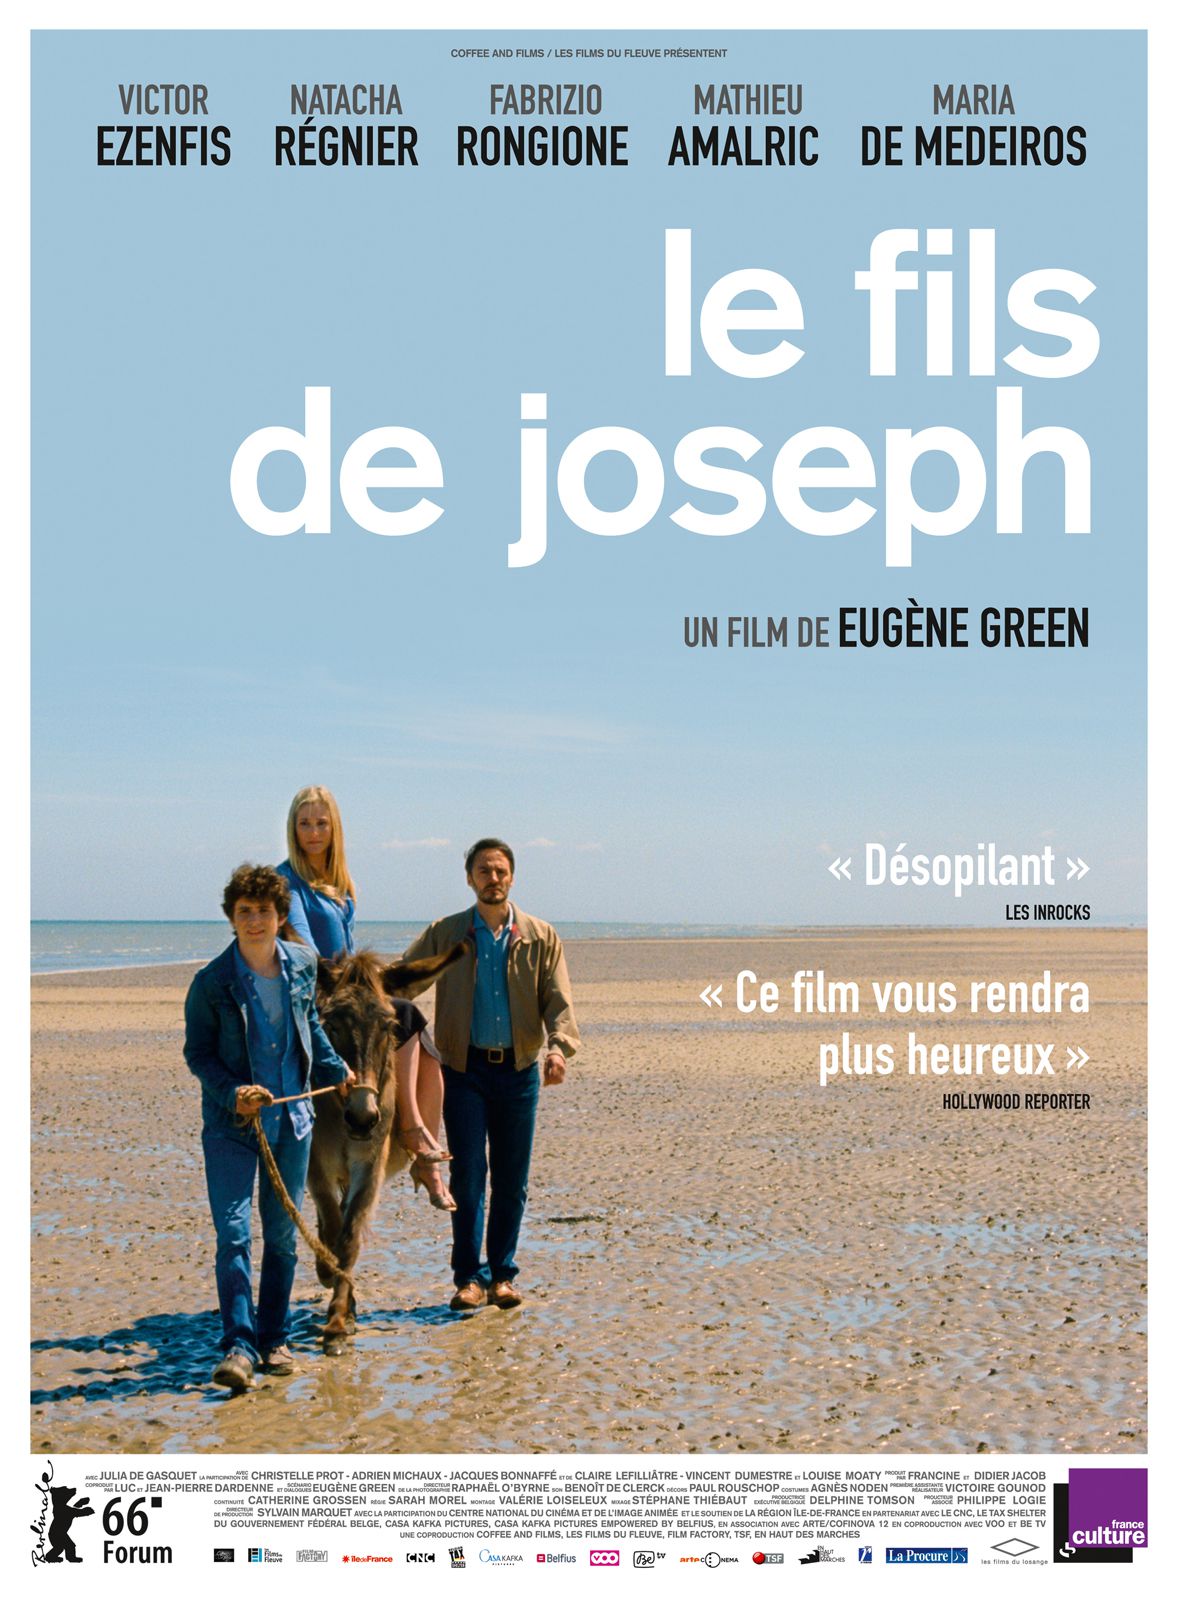 Le Fils de Joseph - Film (2016) streaming VF gratuit complet